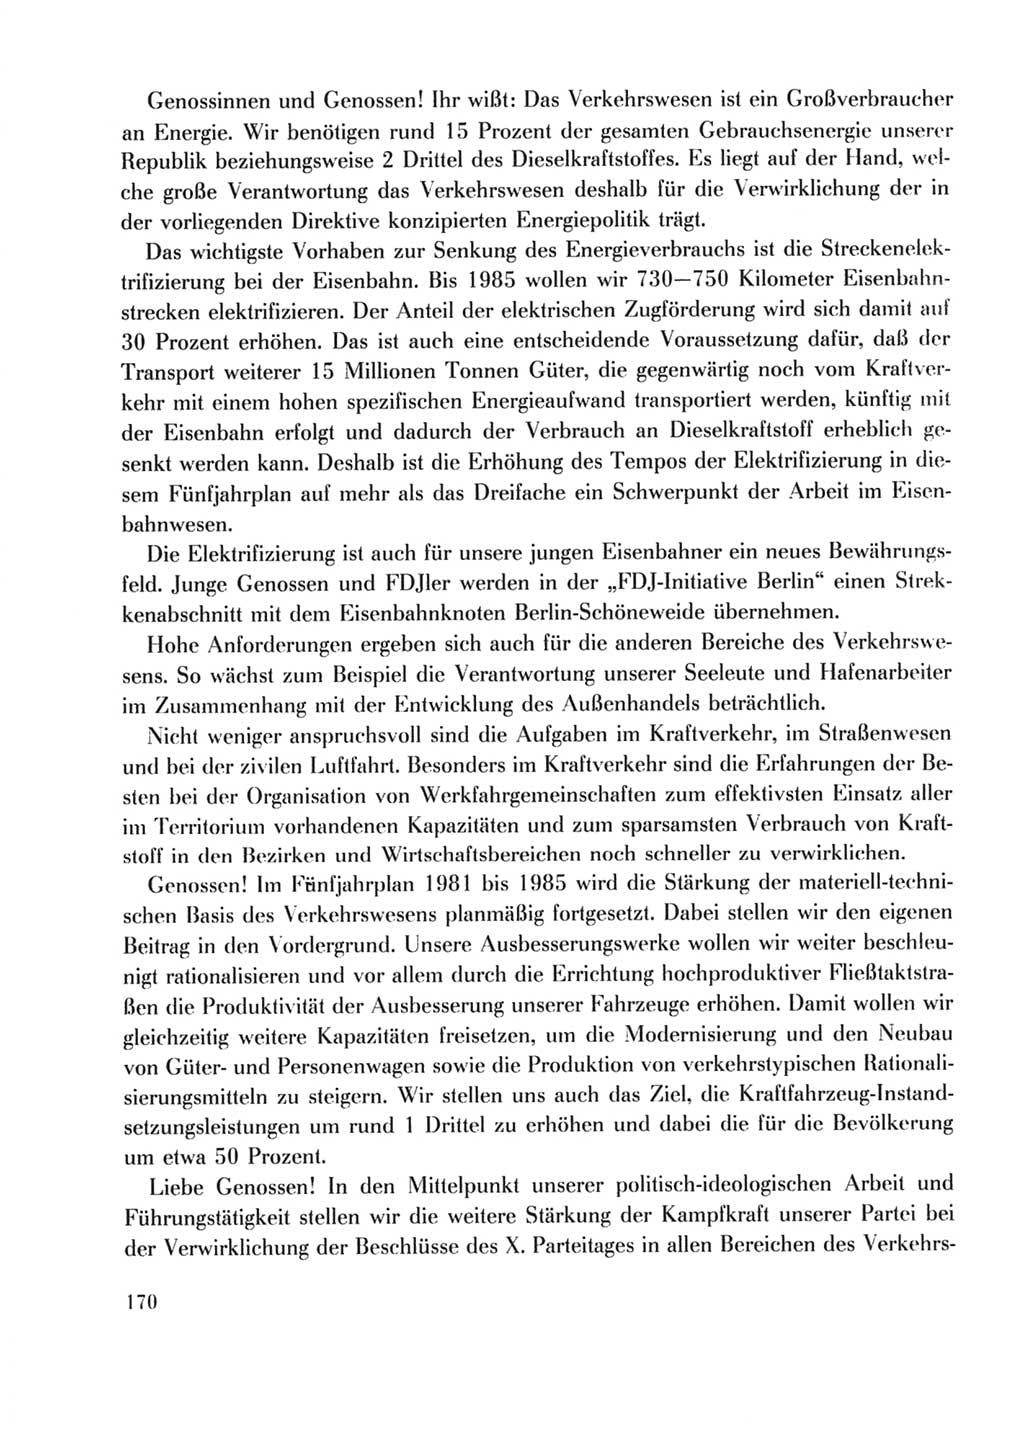 Protokoll der Verhandlungen des Ⅹ. Parteitages der Sozialistischen Einheitspartei Deutschlands (SED) [Deutsche Demokratische Republik (DDR)] 1981, Band 2, Seite 170 (Prot. Verh. Ⅹ. PT SED DDR 1981, Bd. 2, S. 170)